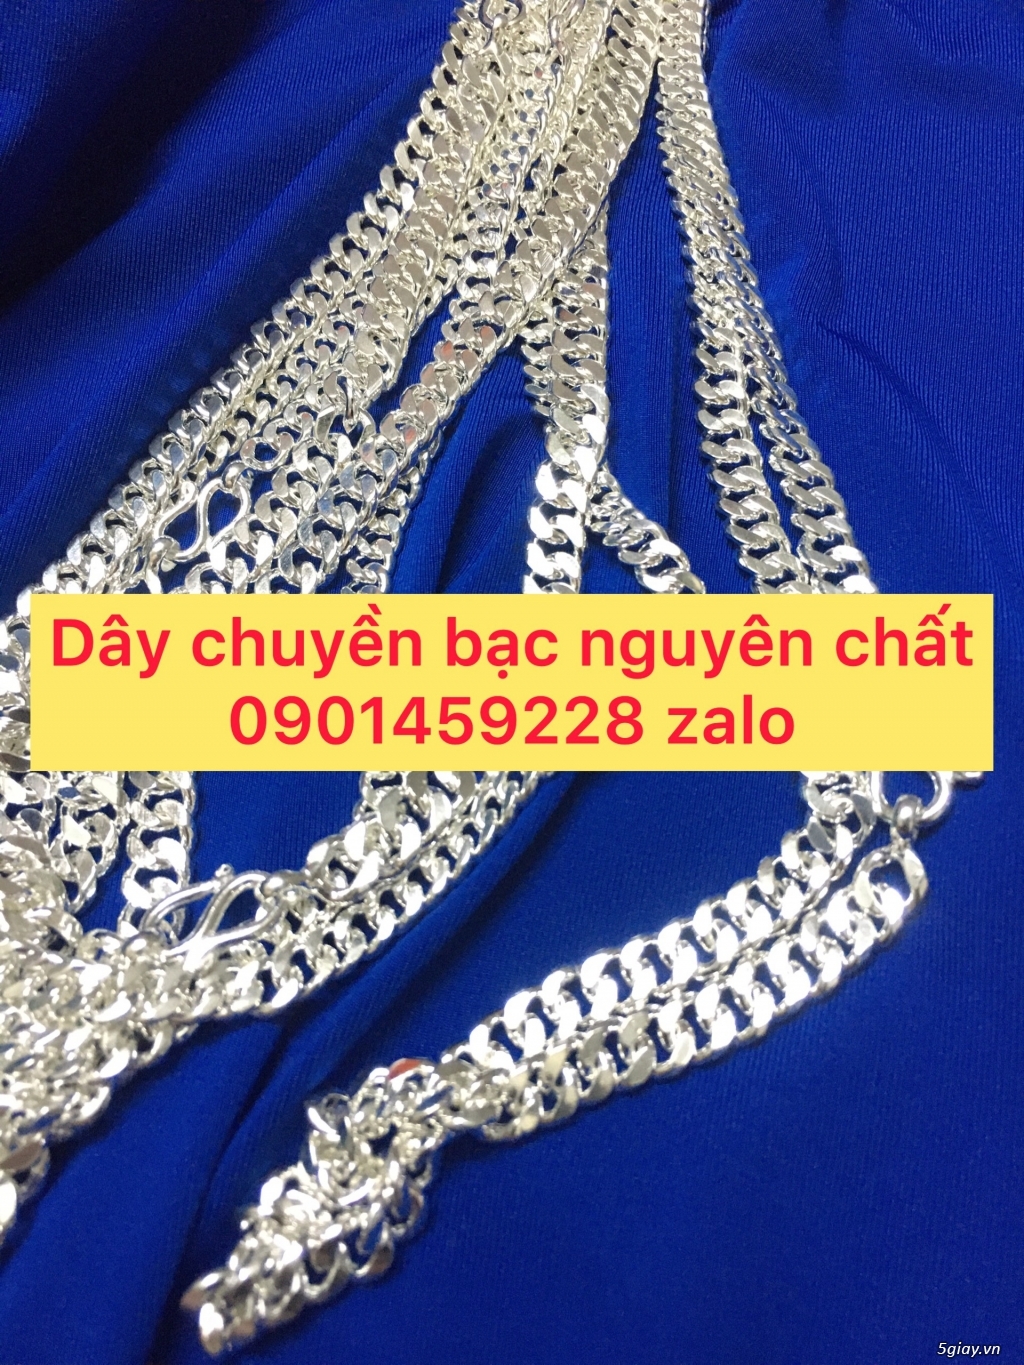 day chuyen bac nguyen chat - 3